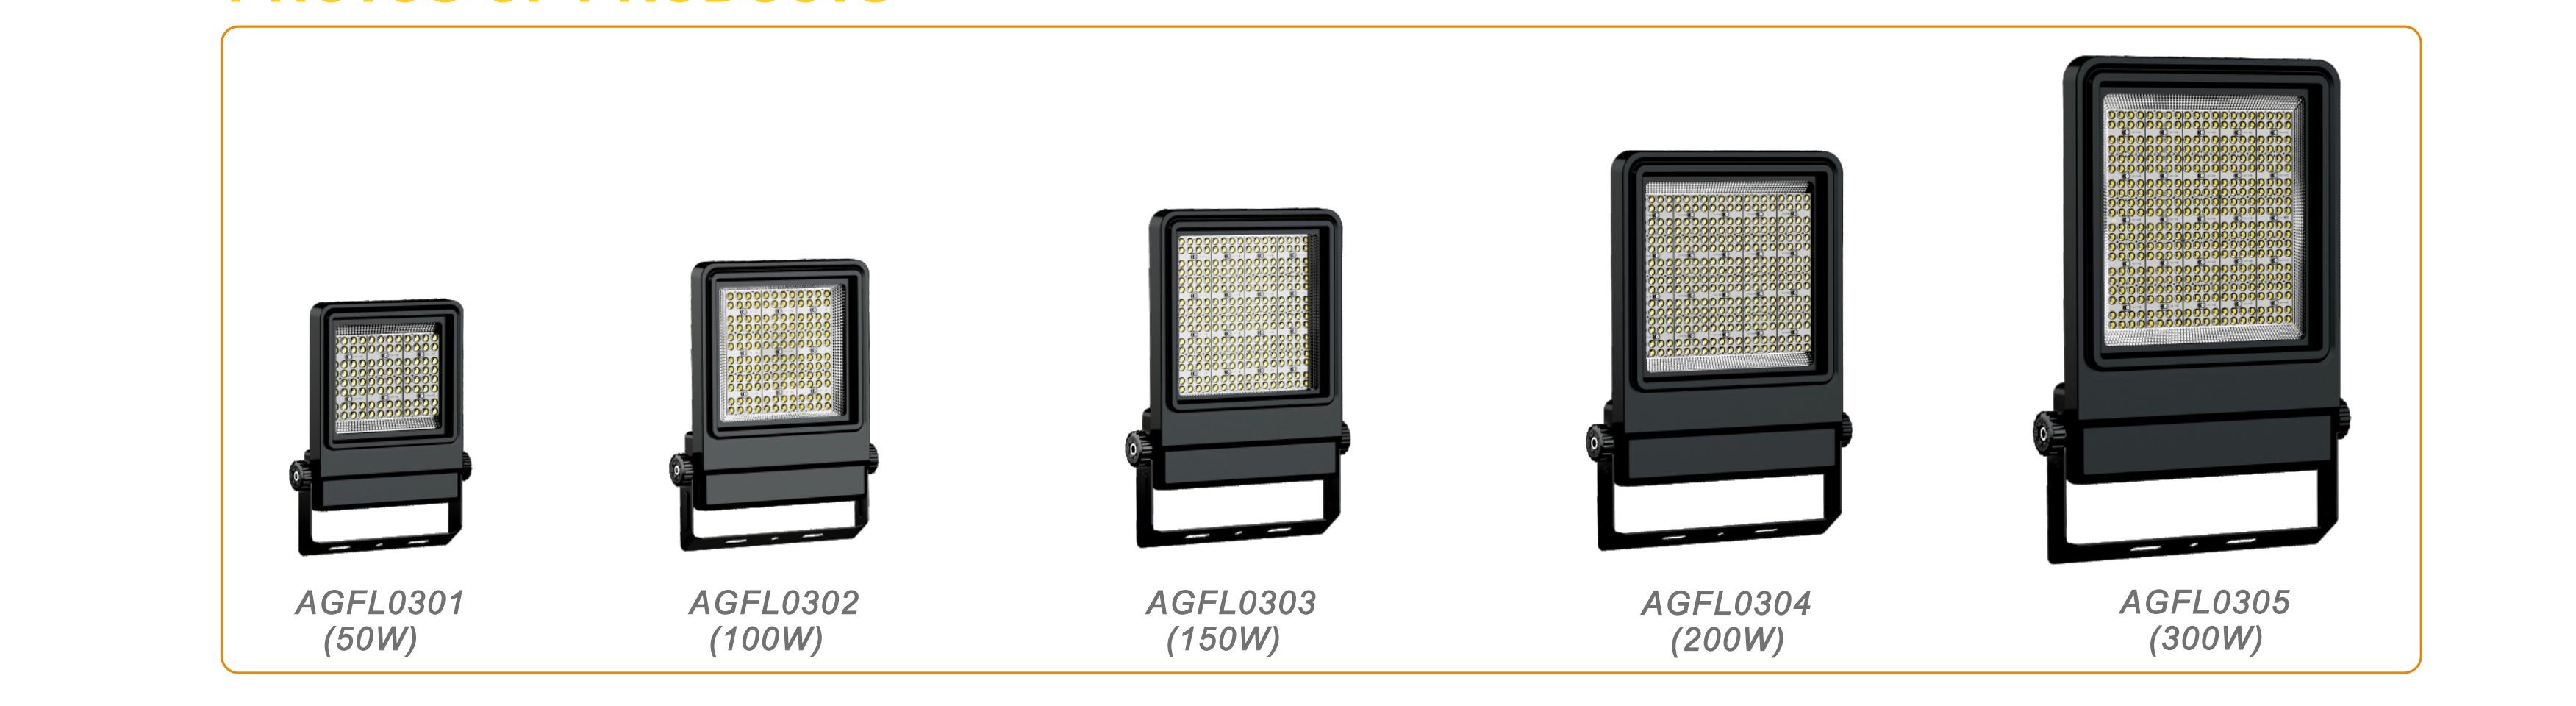 Projecteur LED AGFL03 Spec 2023_01 - 副本 (2)